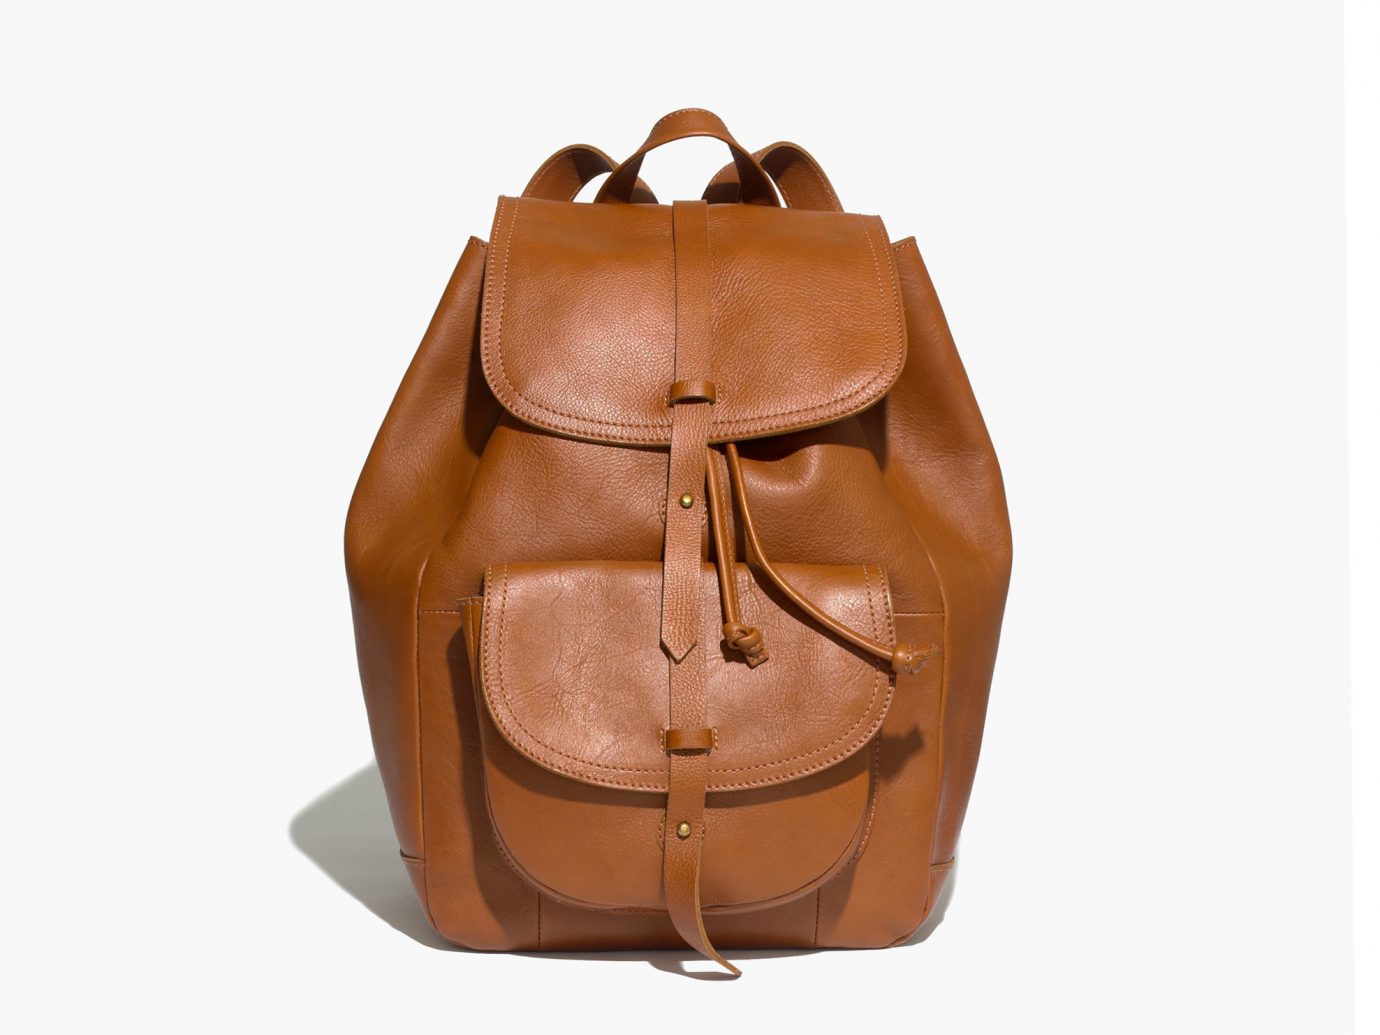 Style + Design accessory bag handbag brown case leather product shoulder bag backpack distilled beverage textile tan